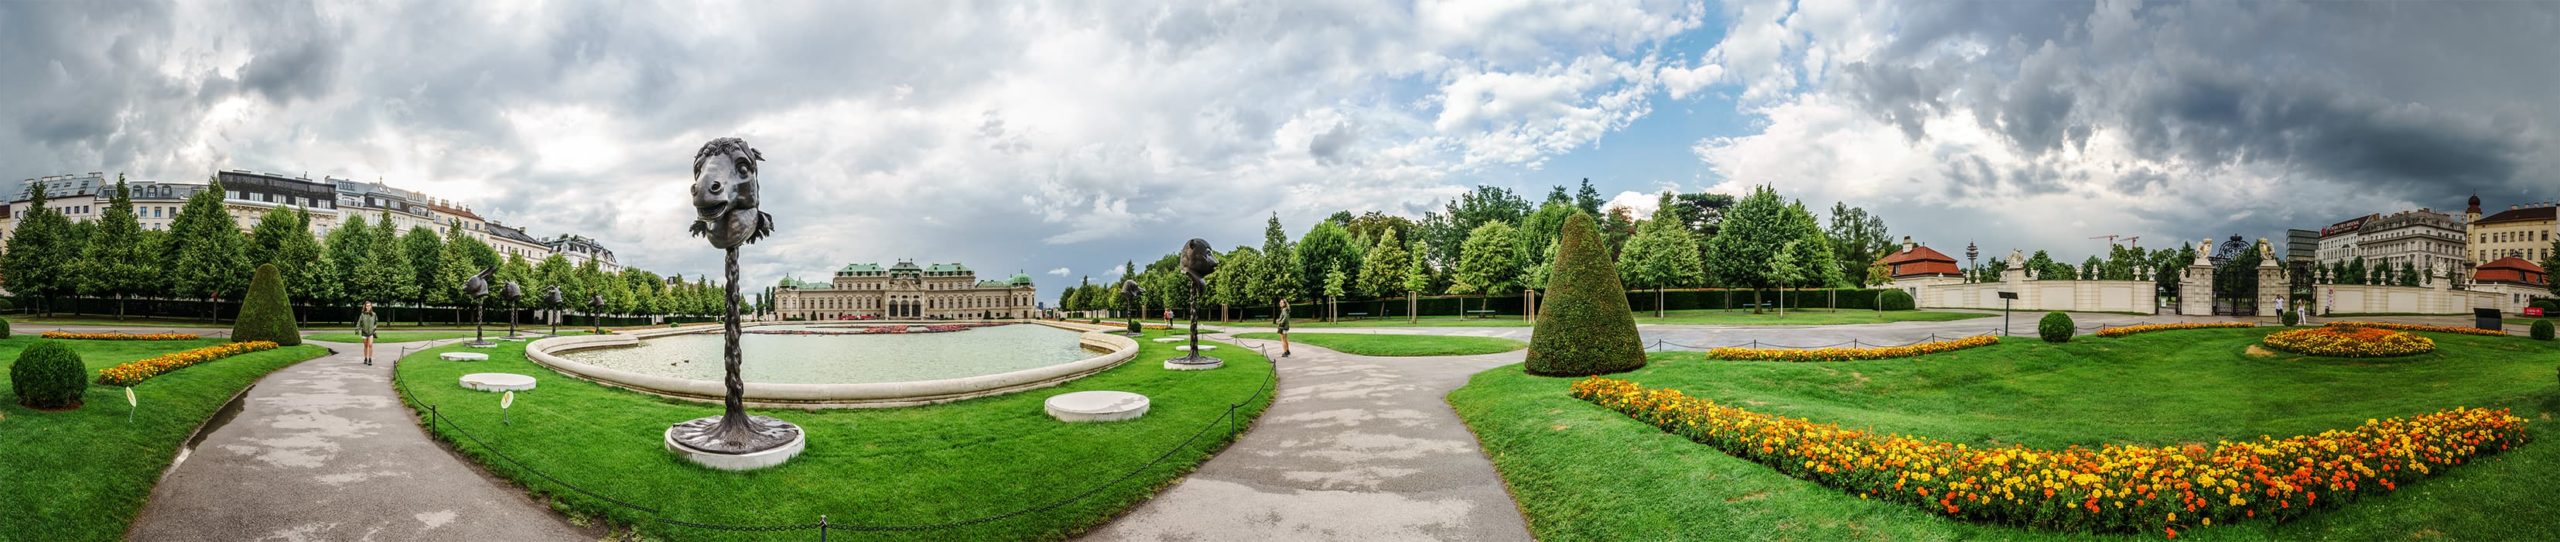 wien-panorama-belvedere